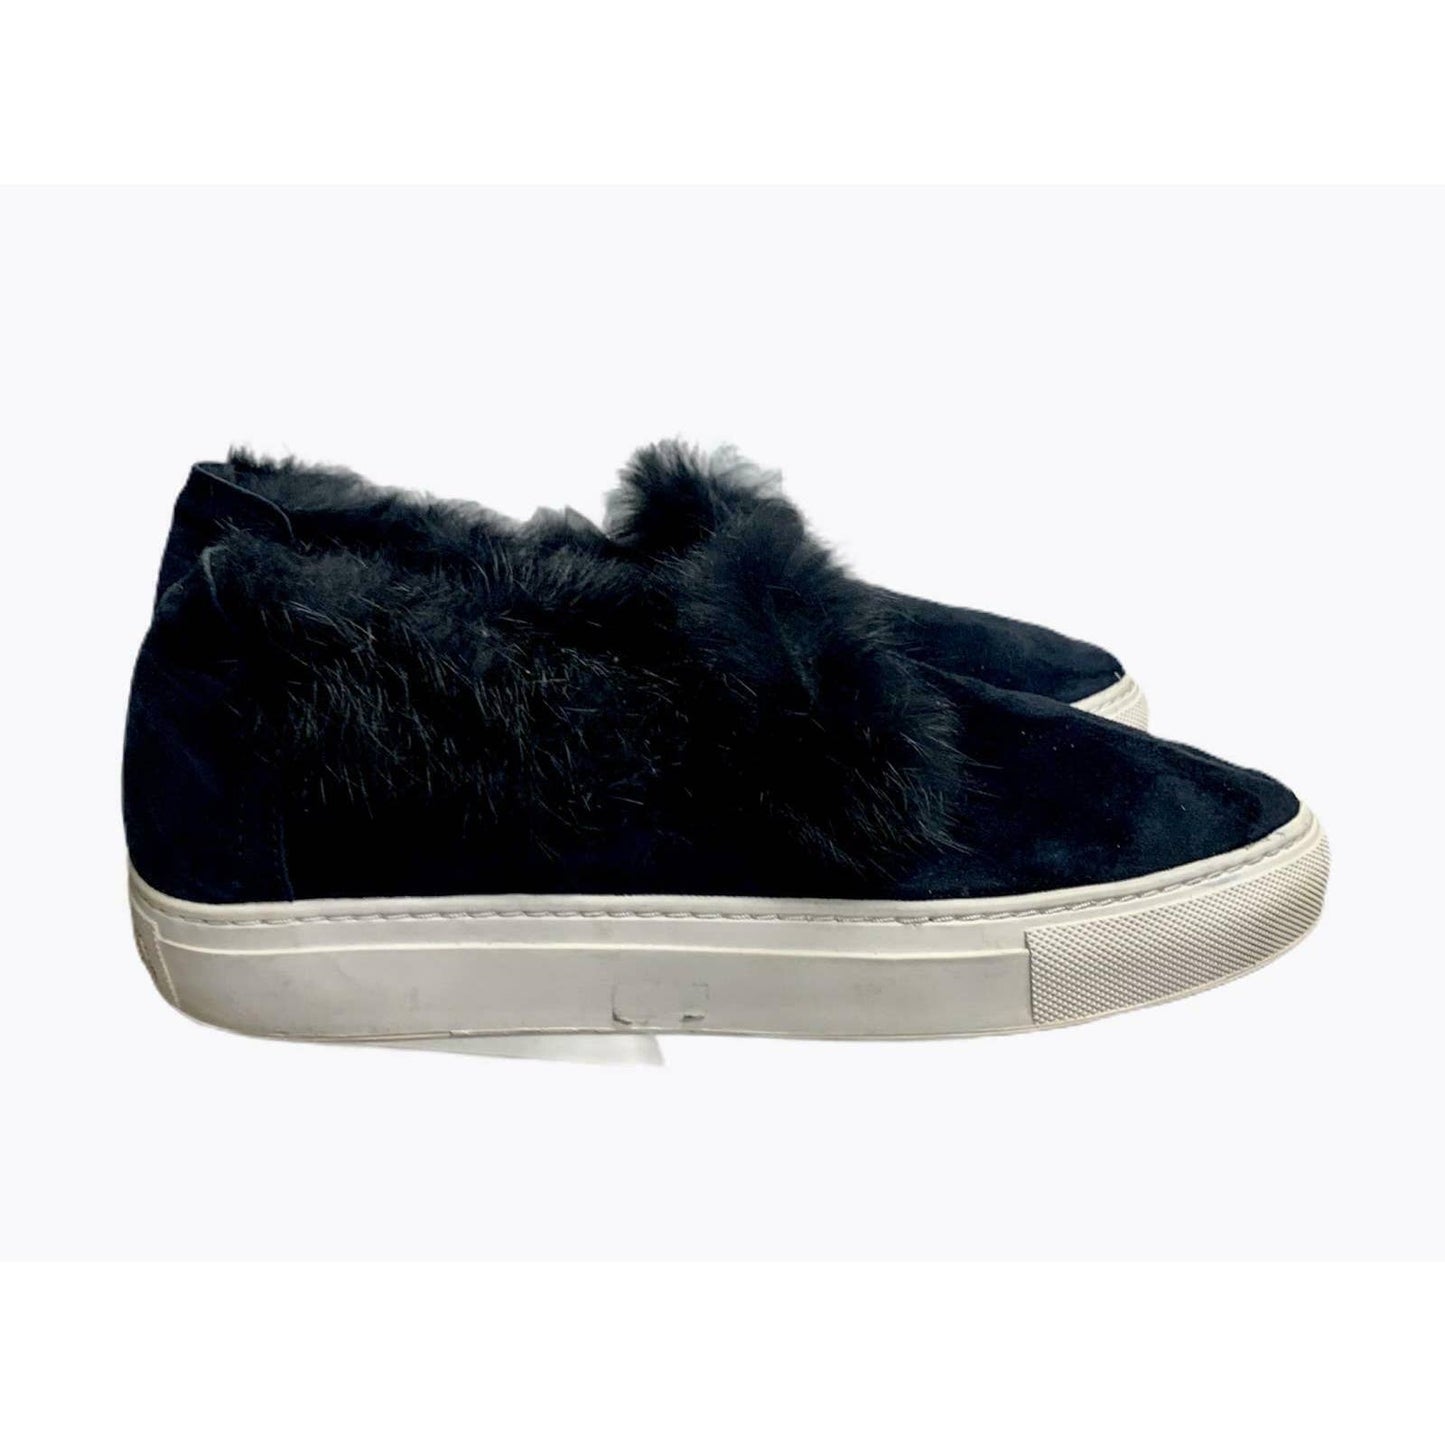 Rachel Zoe Fur Trim Slip on Sneakers Trainers Flats Comfort 7 Navy - Premium  from Rachel Zoe - Just $37.0! Shop now at Finds For You